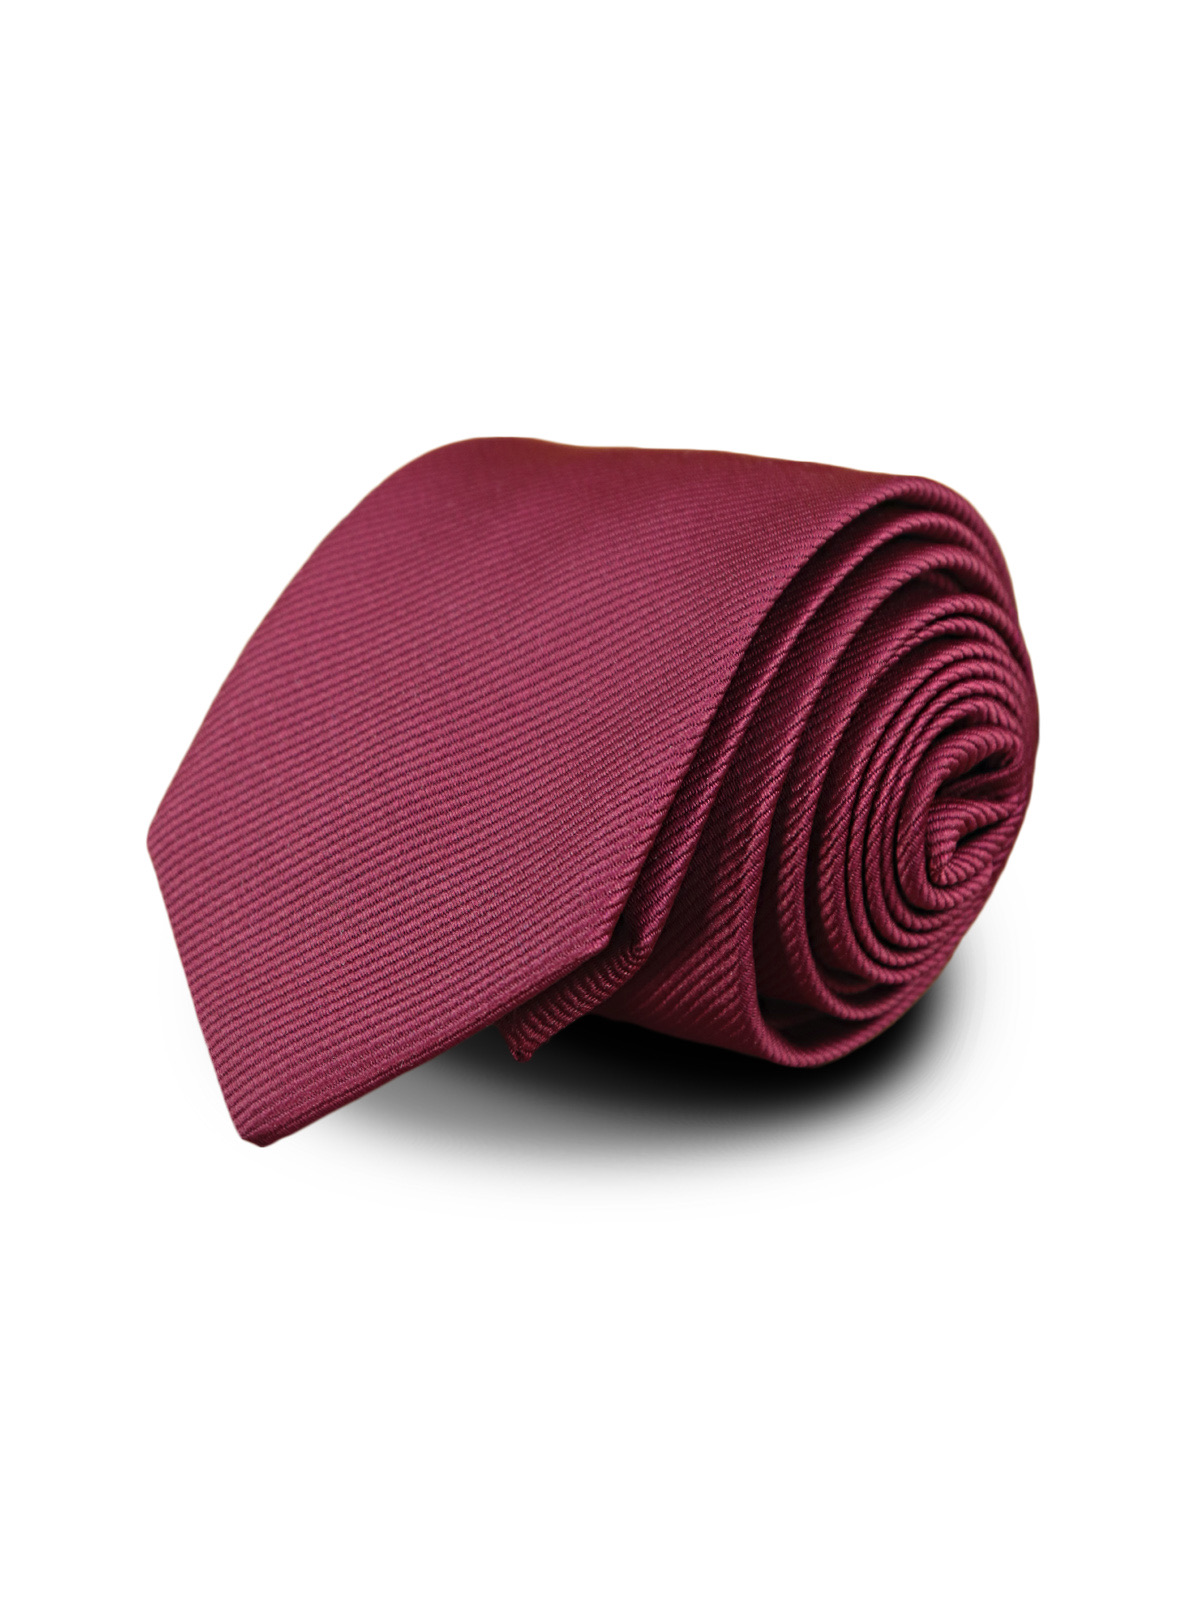 Галстук с полосами бордовый описание: Фасон - Узкий галстук, Материал - Микрофибра, Цвет - бордовый, Размер - 6 см х 147 см, Страна производства - Турция.